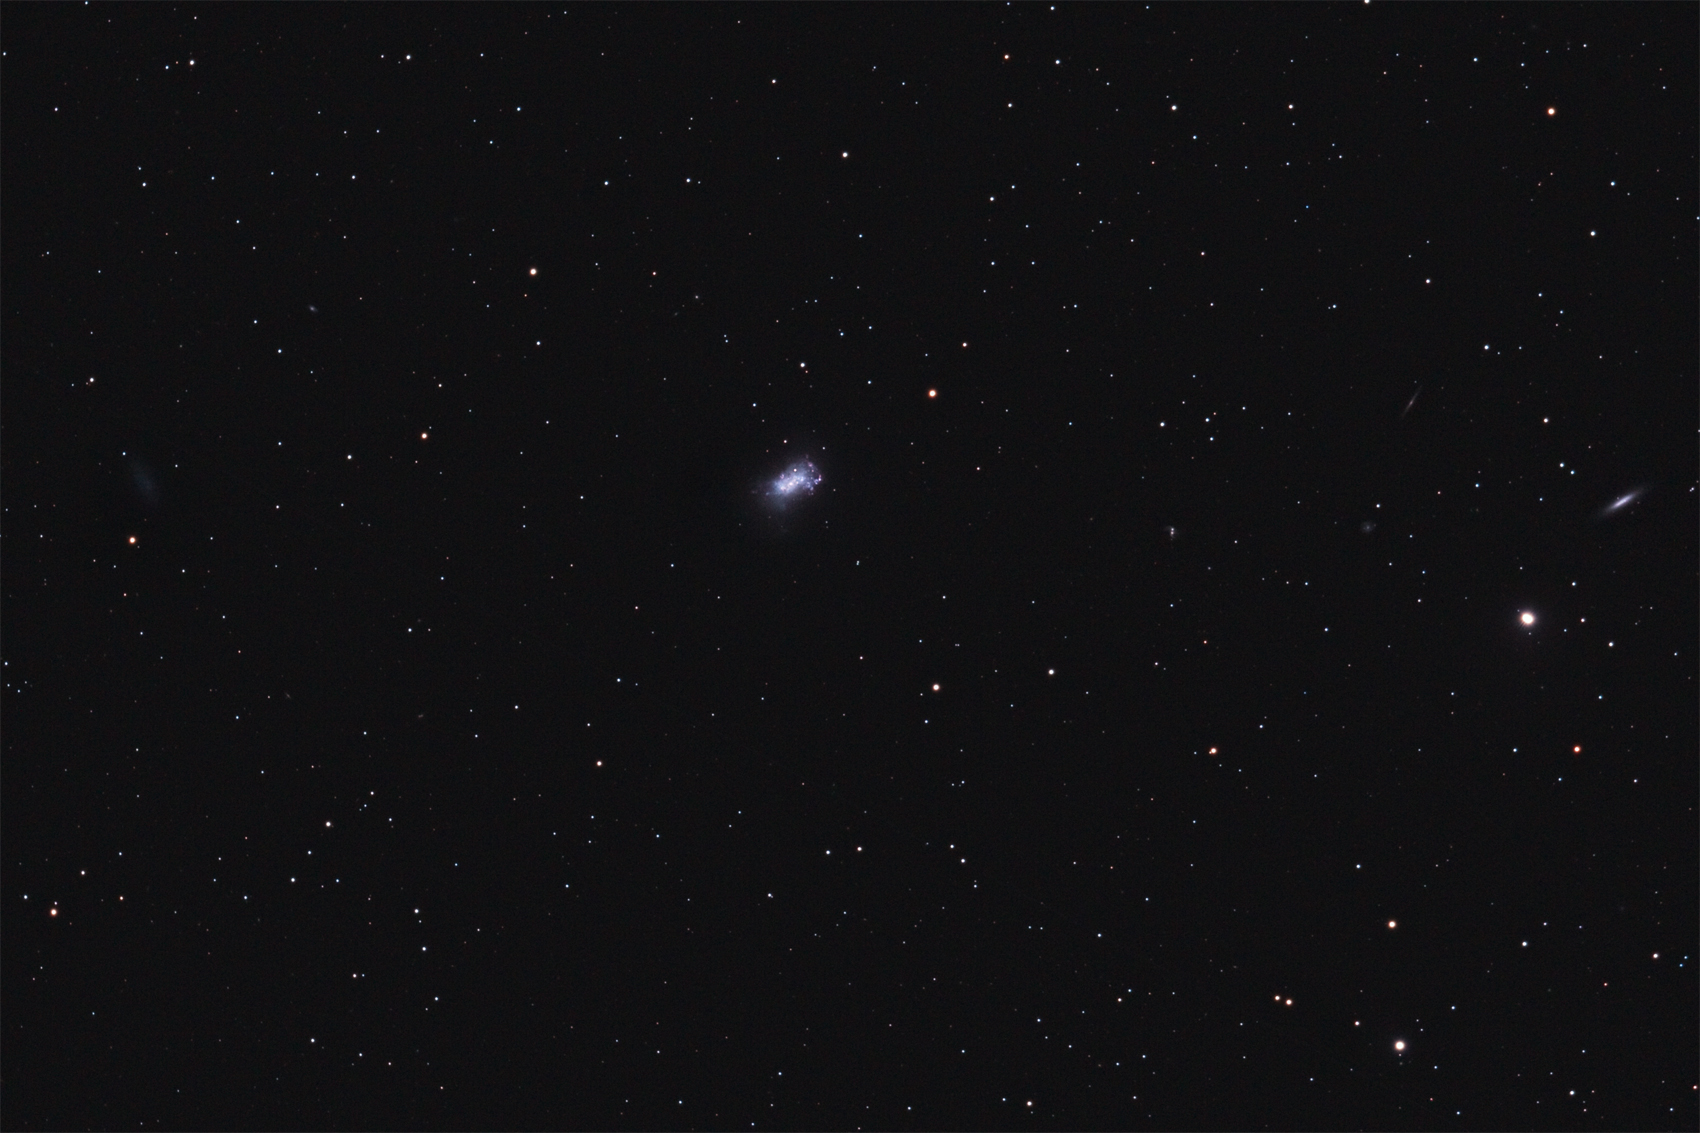 NGC4449